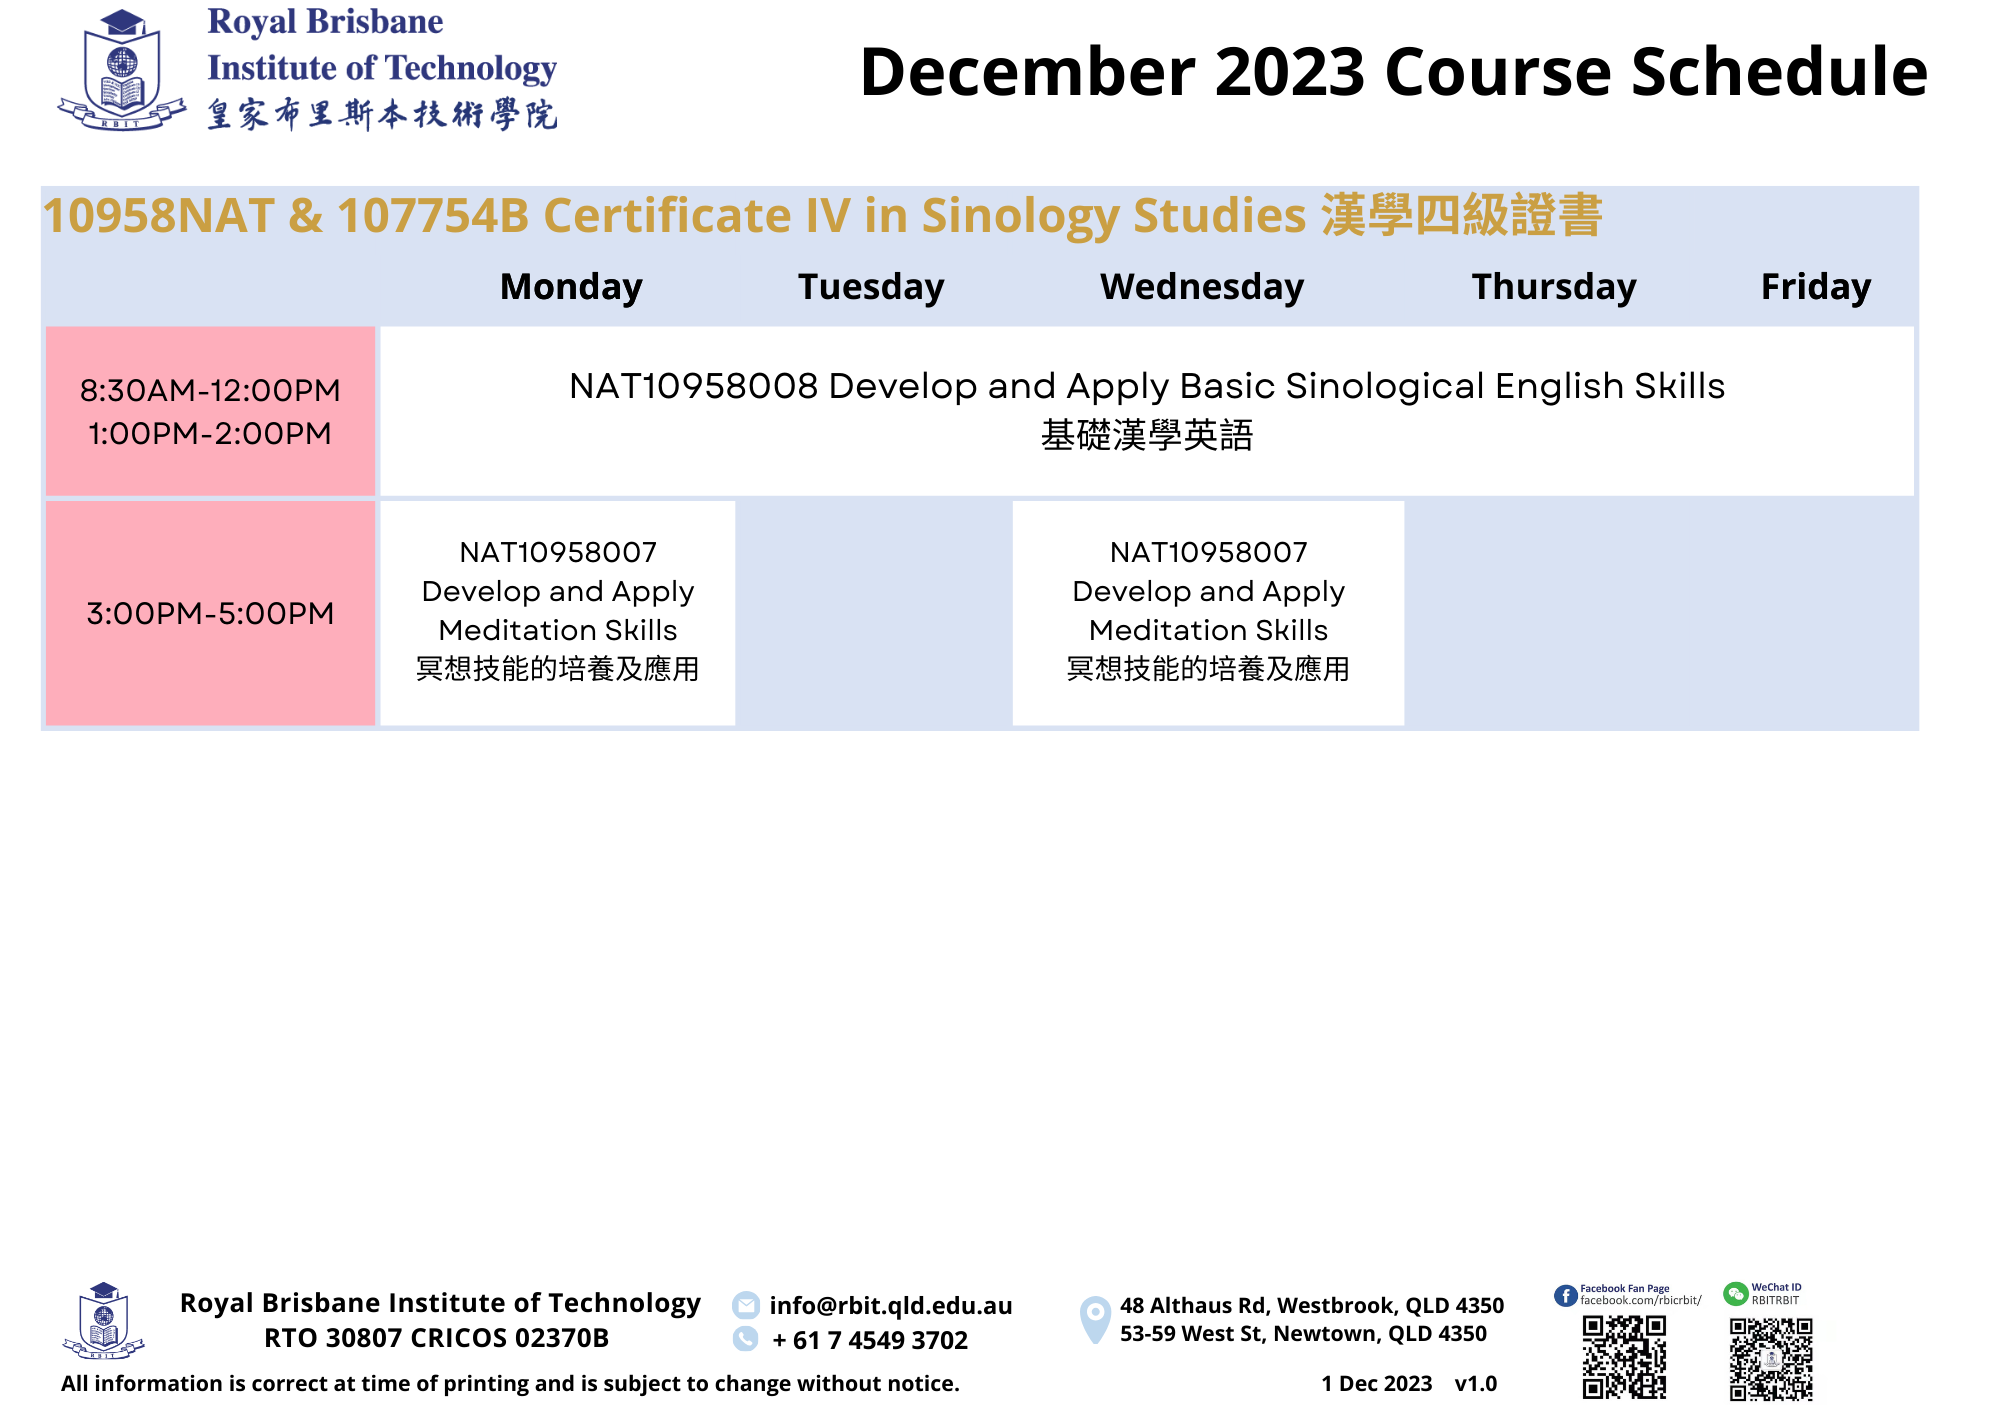 AL0_202312 Course Schedule_v1.0